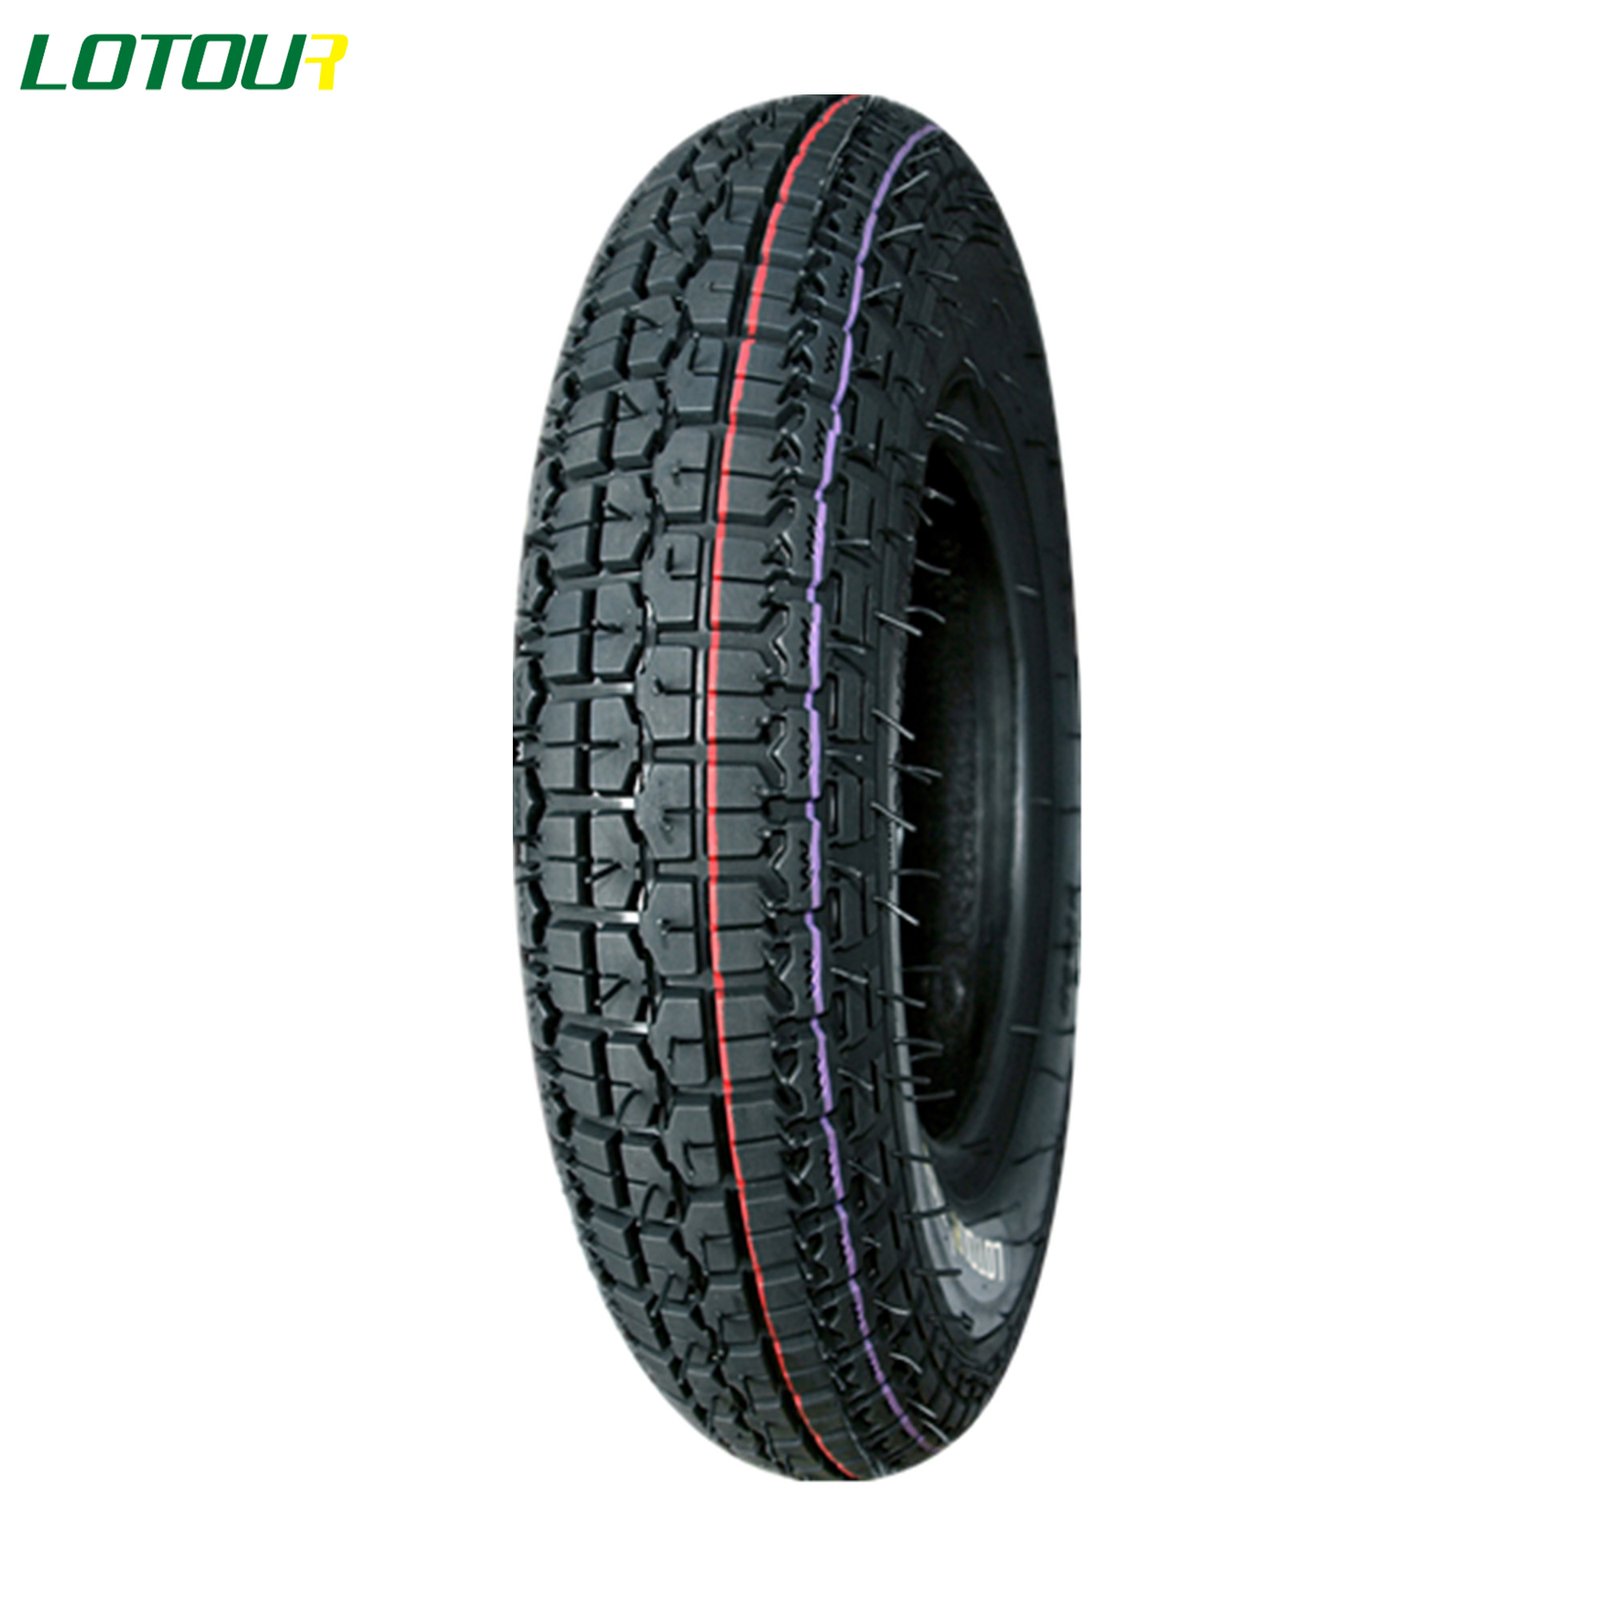 Lotour Tire M2078